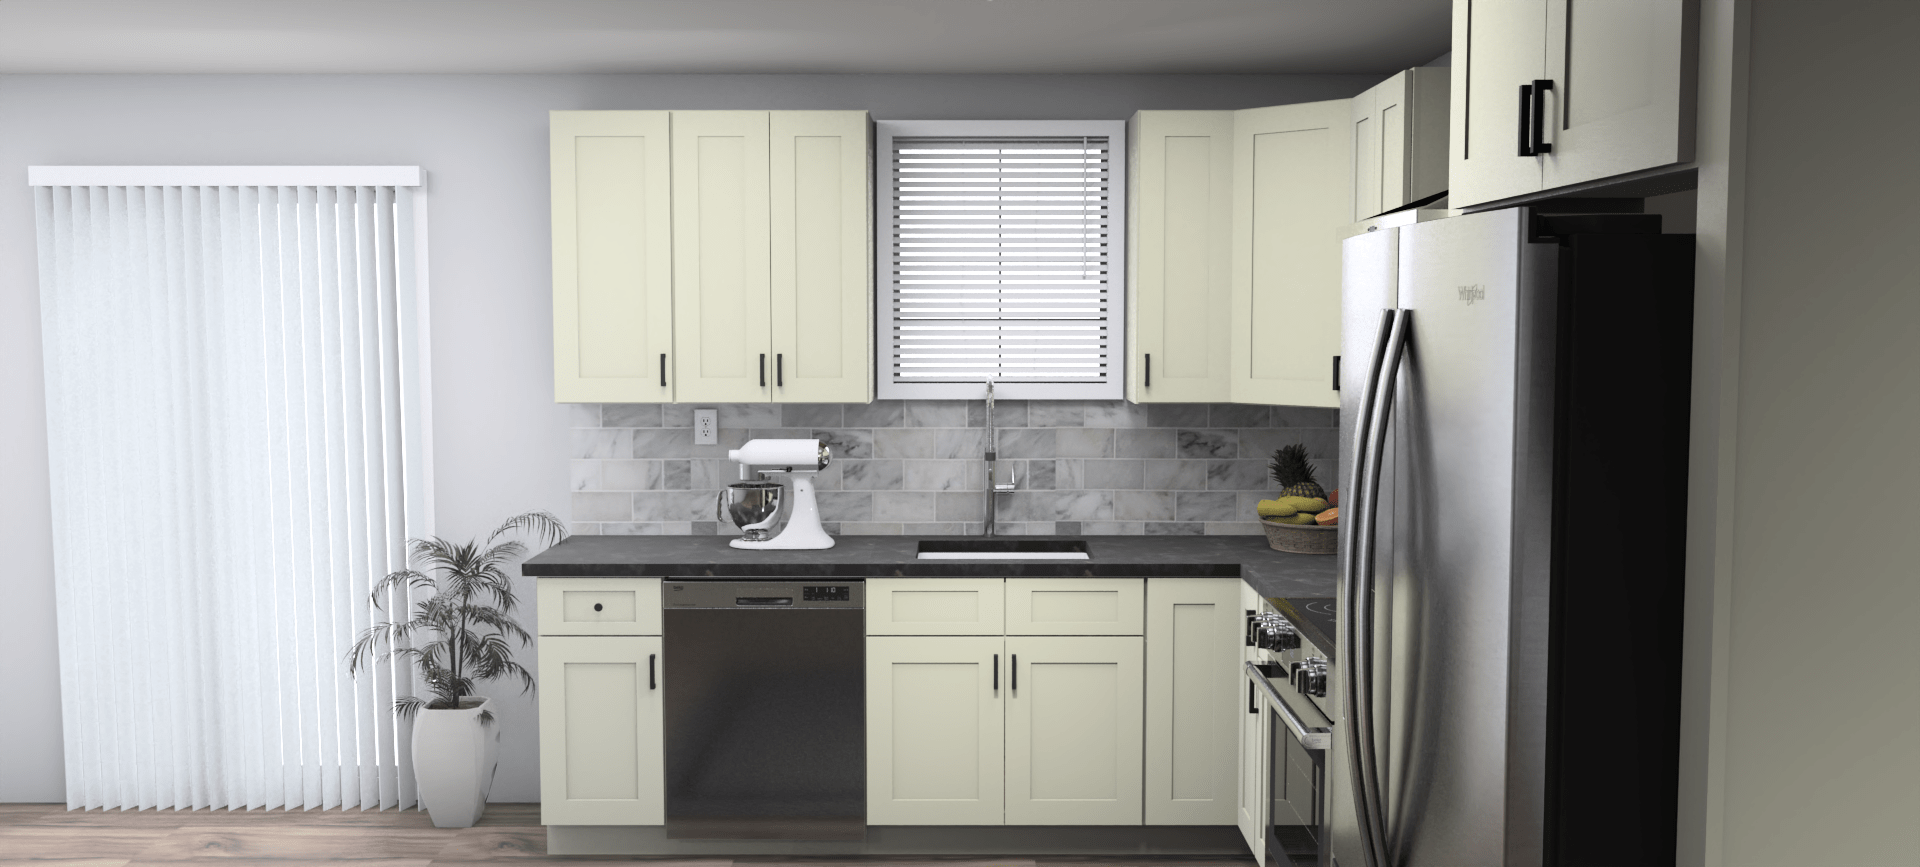 Fabuwood Allure Galaxy Linen 9 x 12 L Shaped Kitchen Side Layout Photo